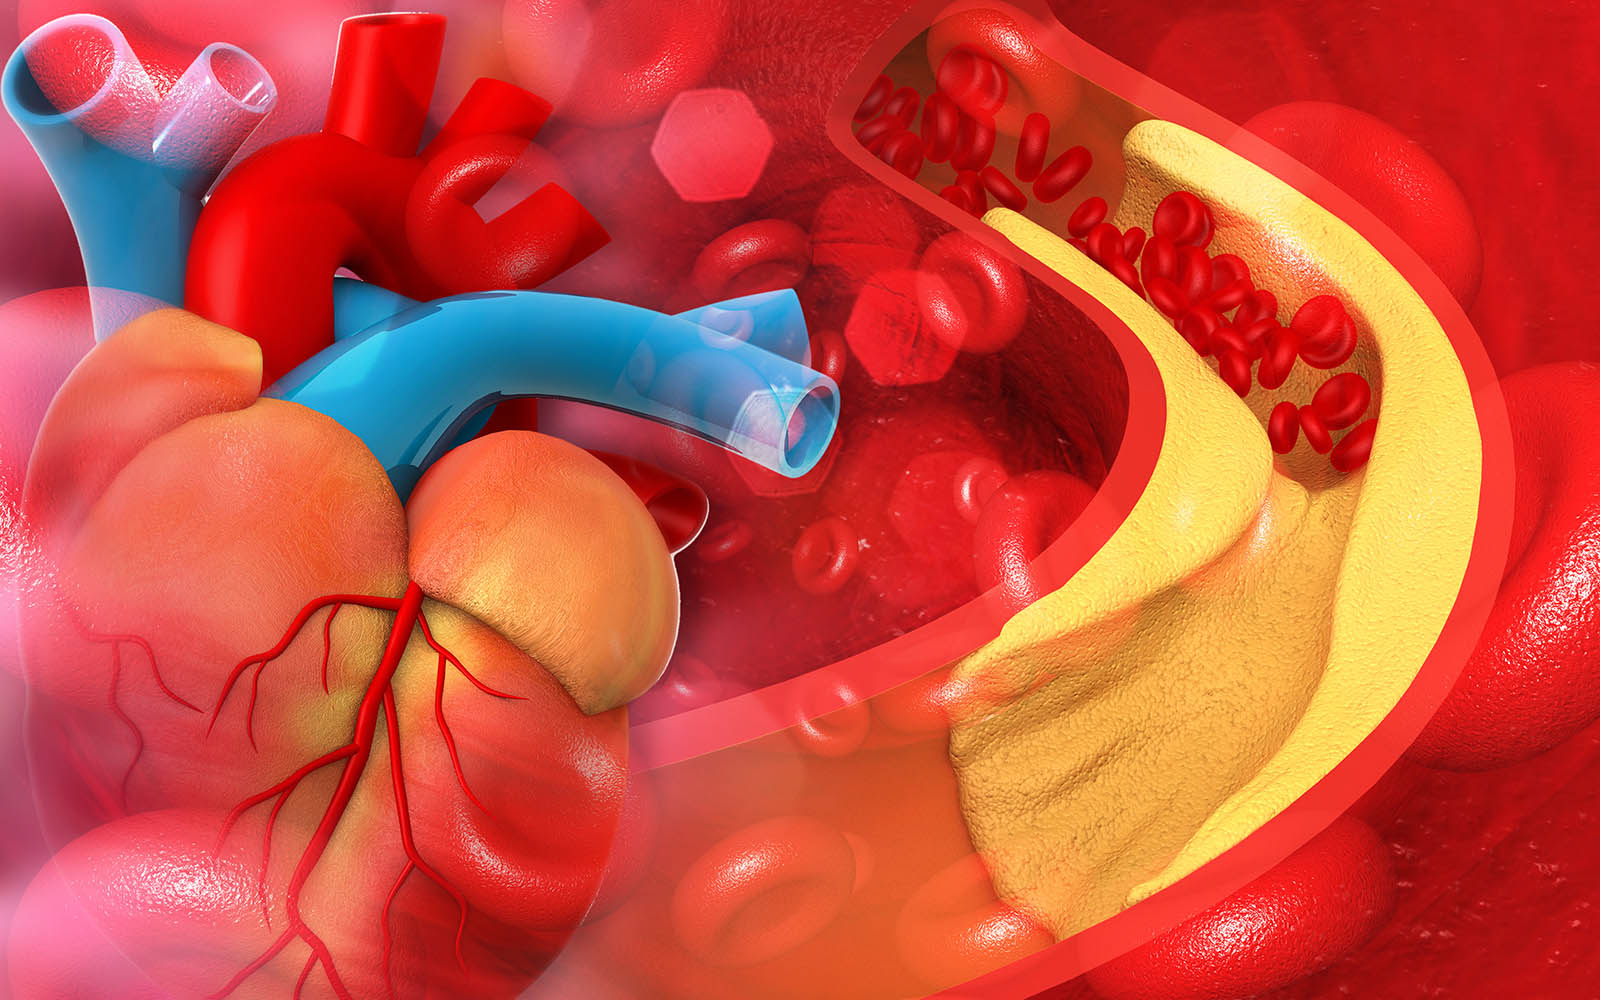 Koronare Herzkrankheit: Symptome, Ursachen, Behandlung